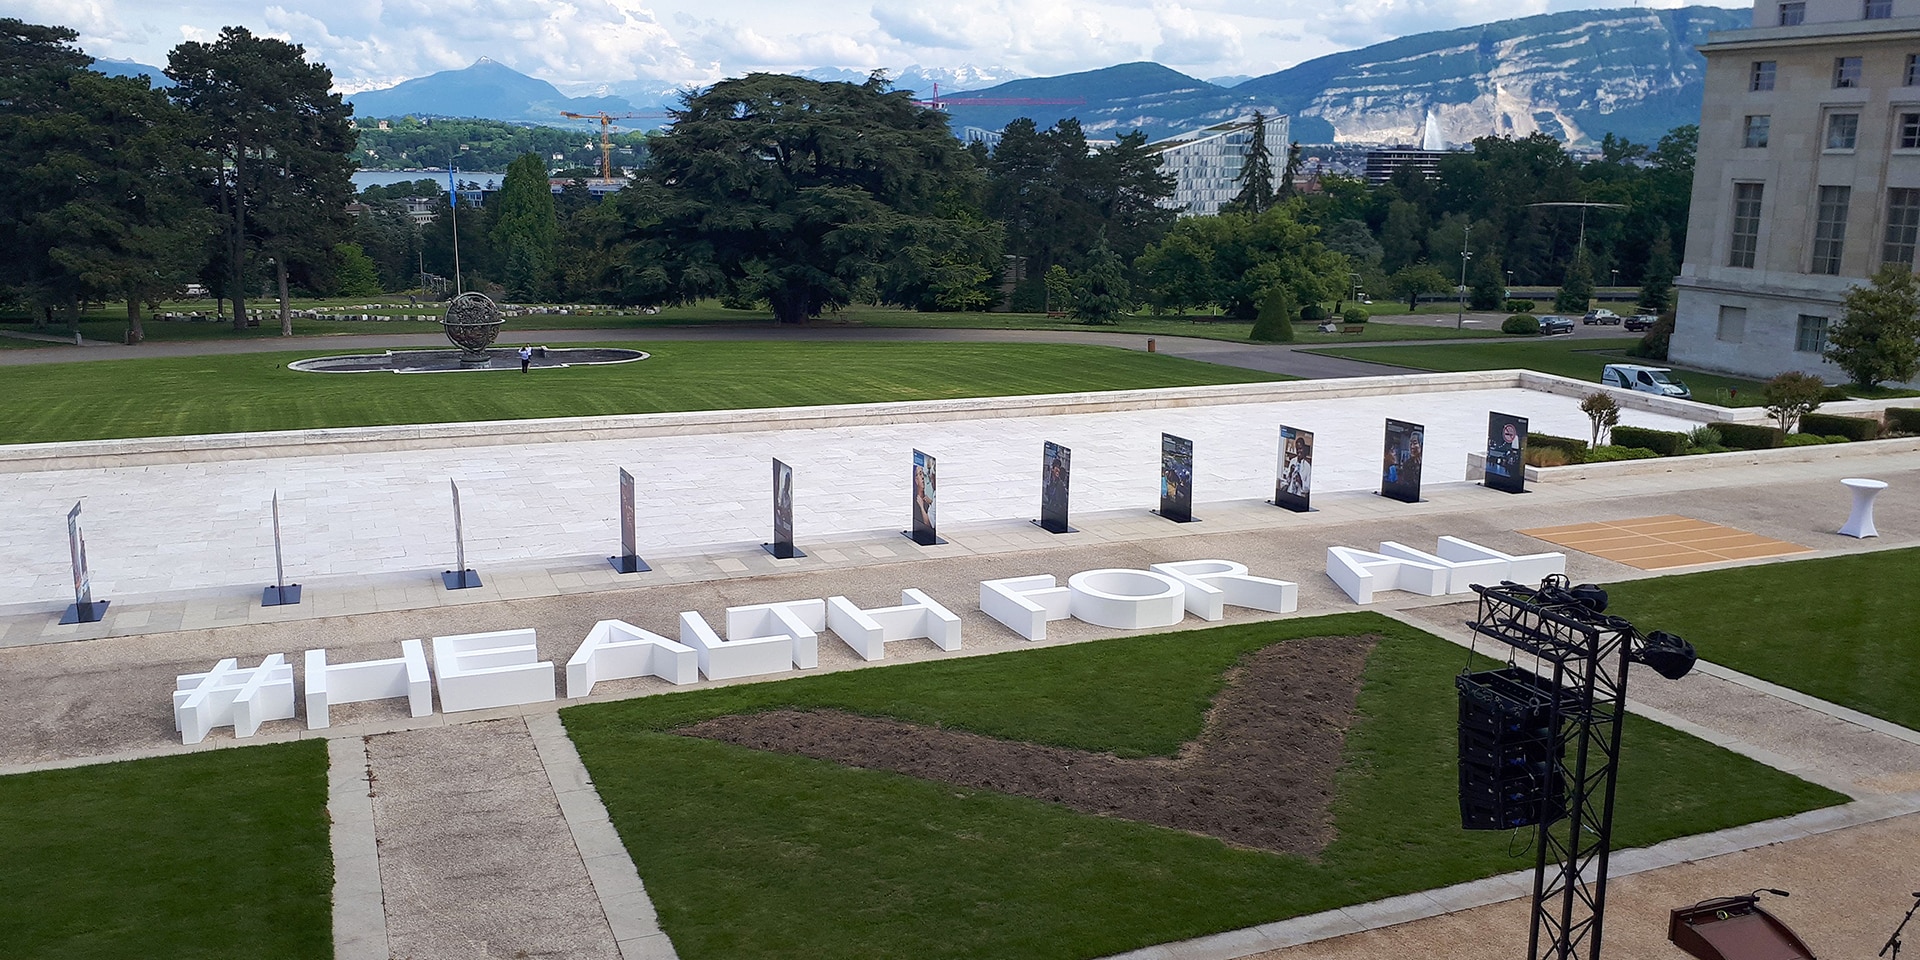 Auf dem Rasen vor dem UNO-Gebäude in Genf steht in grossen Buchstaben: #HEALTH FOR ALL.